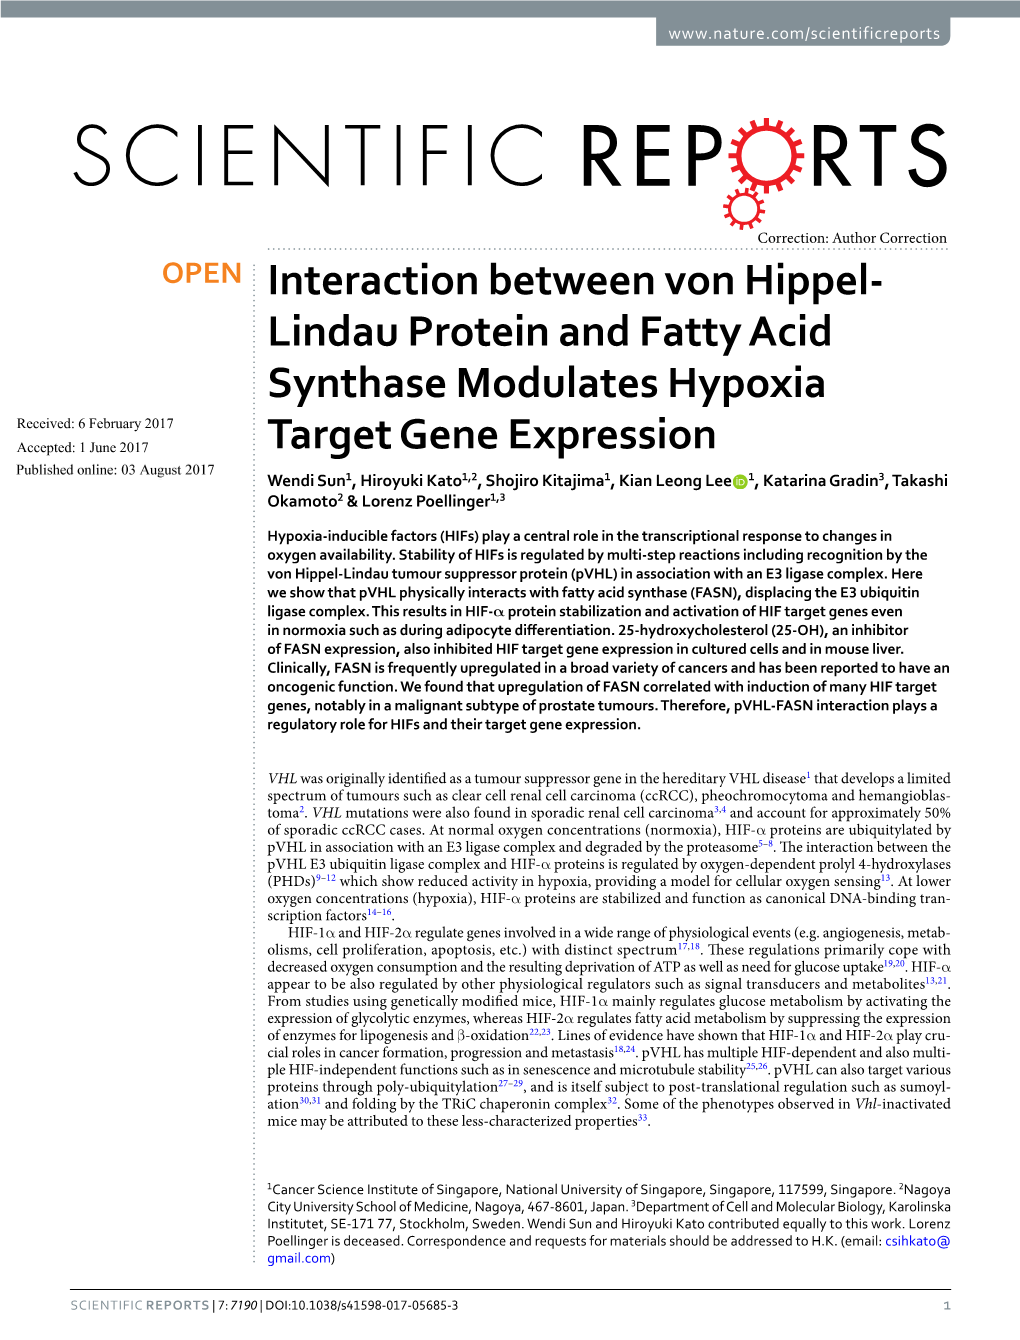 Interaction Between Von Hippel-Lindau Protein and Fatty